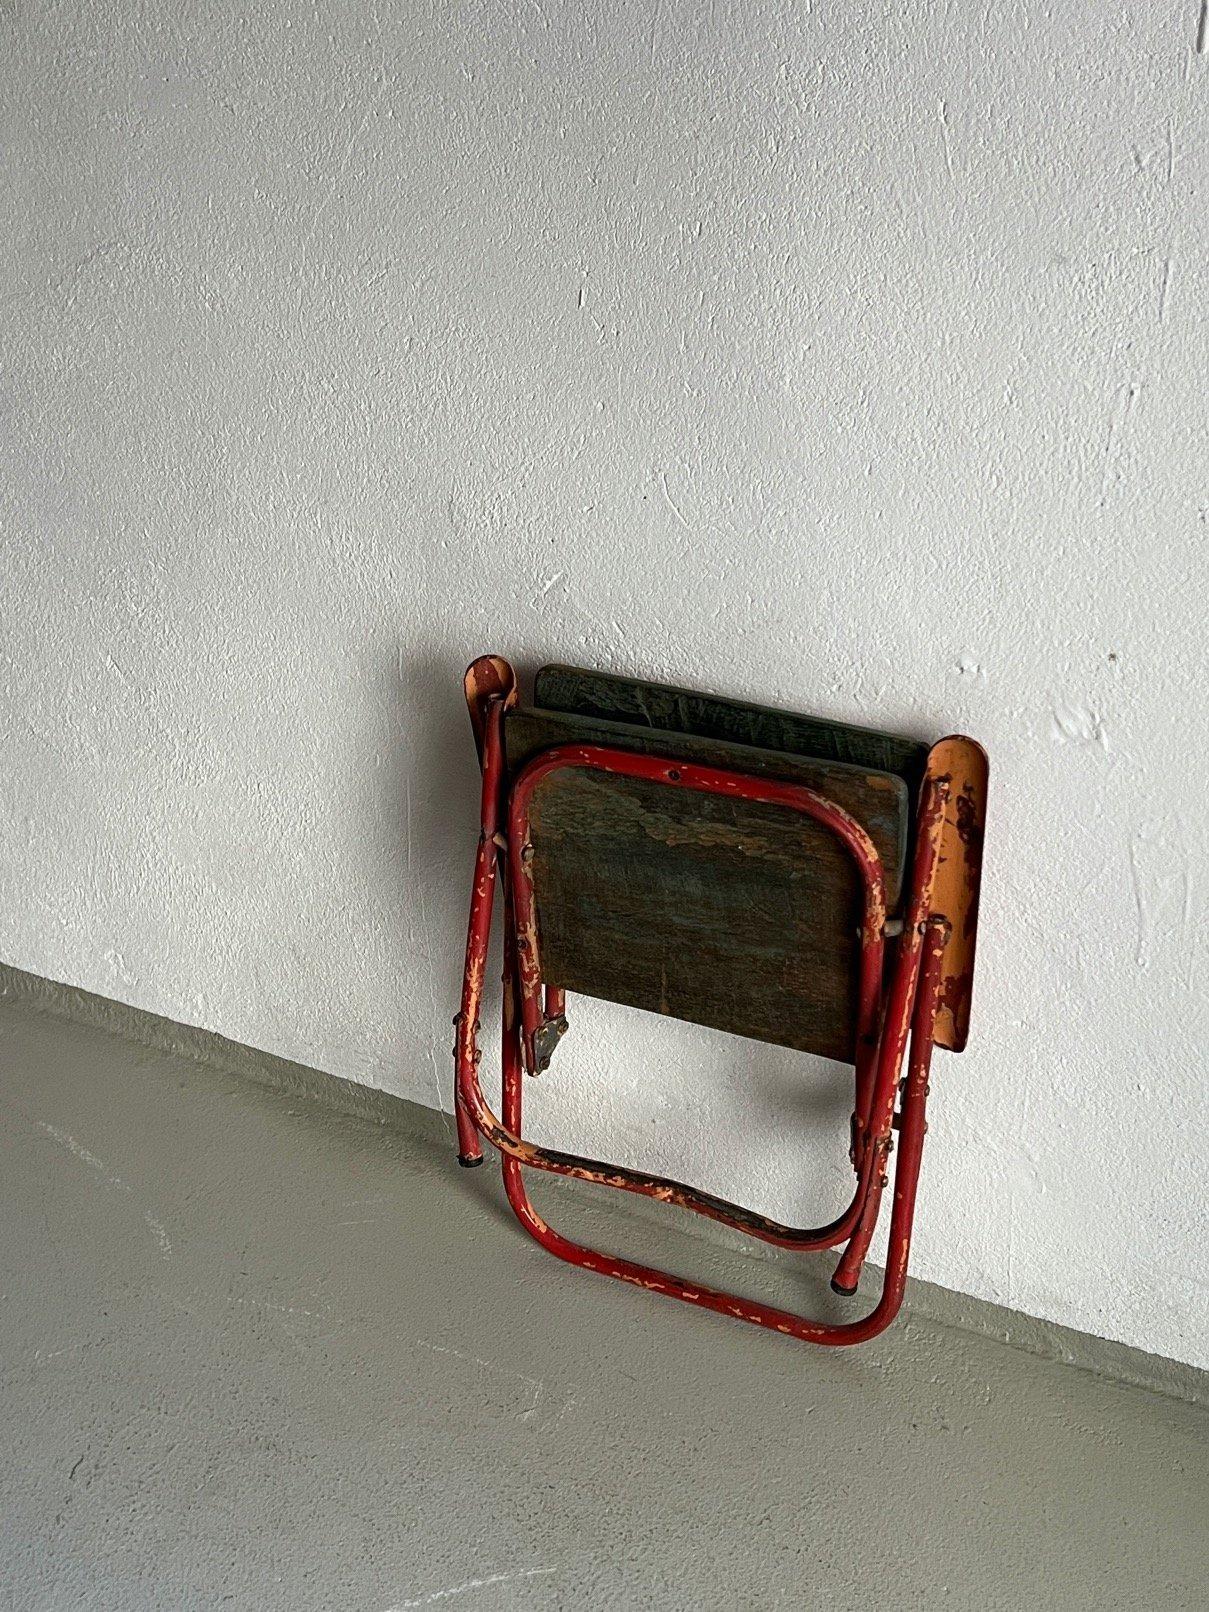 Chaise pliante en métal Wabi Sabi avec cadre en métal peint en rouge et détails en bois peints en vert. Belle patine.

Informations complémentaires :
Lieu d'origine - Pays-Bas
Dimensions : 39 L x 42 P x 55 H cm
Assise : 28 H cm